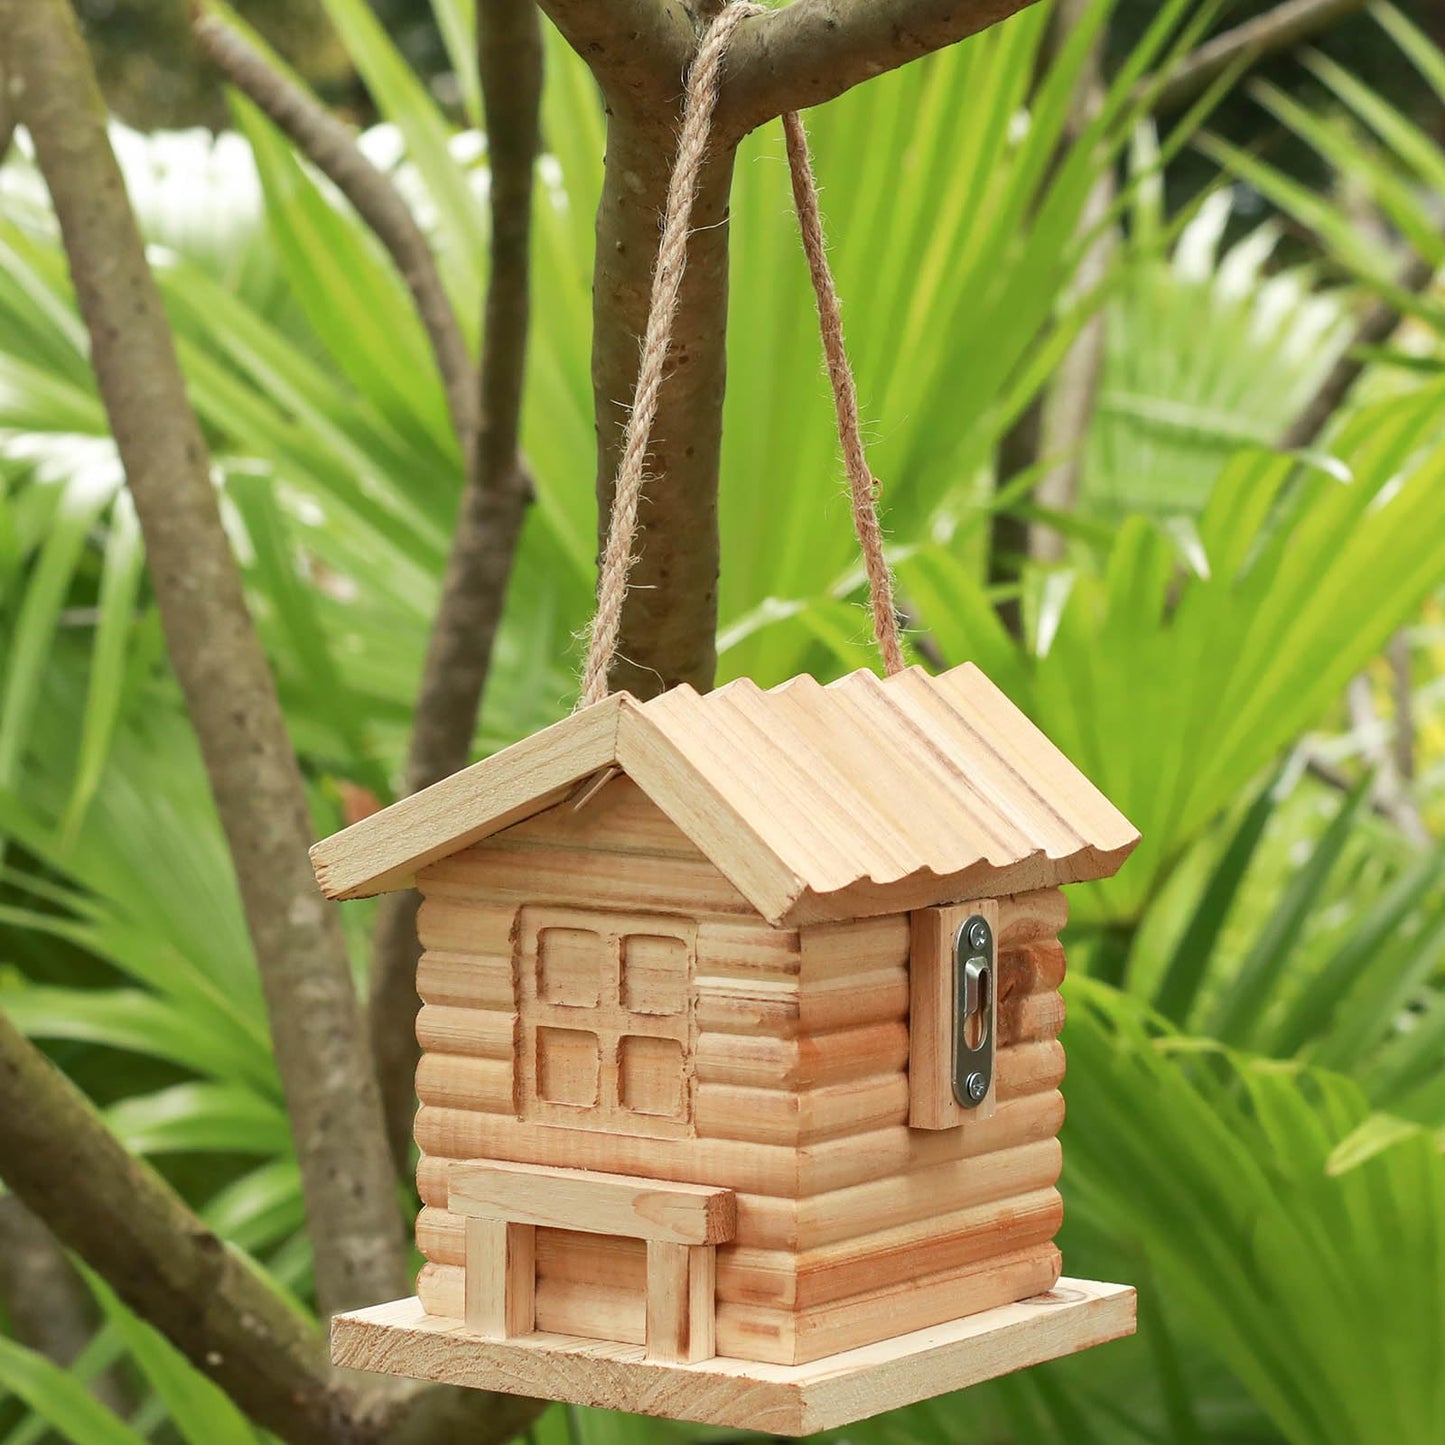 STARSWR Bird House Outside,Outdoors Bird House for Bluebird Finch Cardinals Hummingbird,Small Hanging Wooden Bird House Clearance